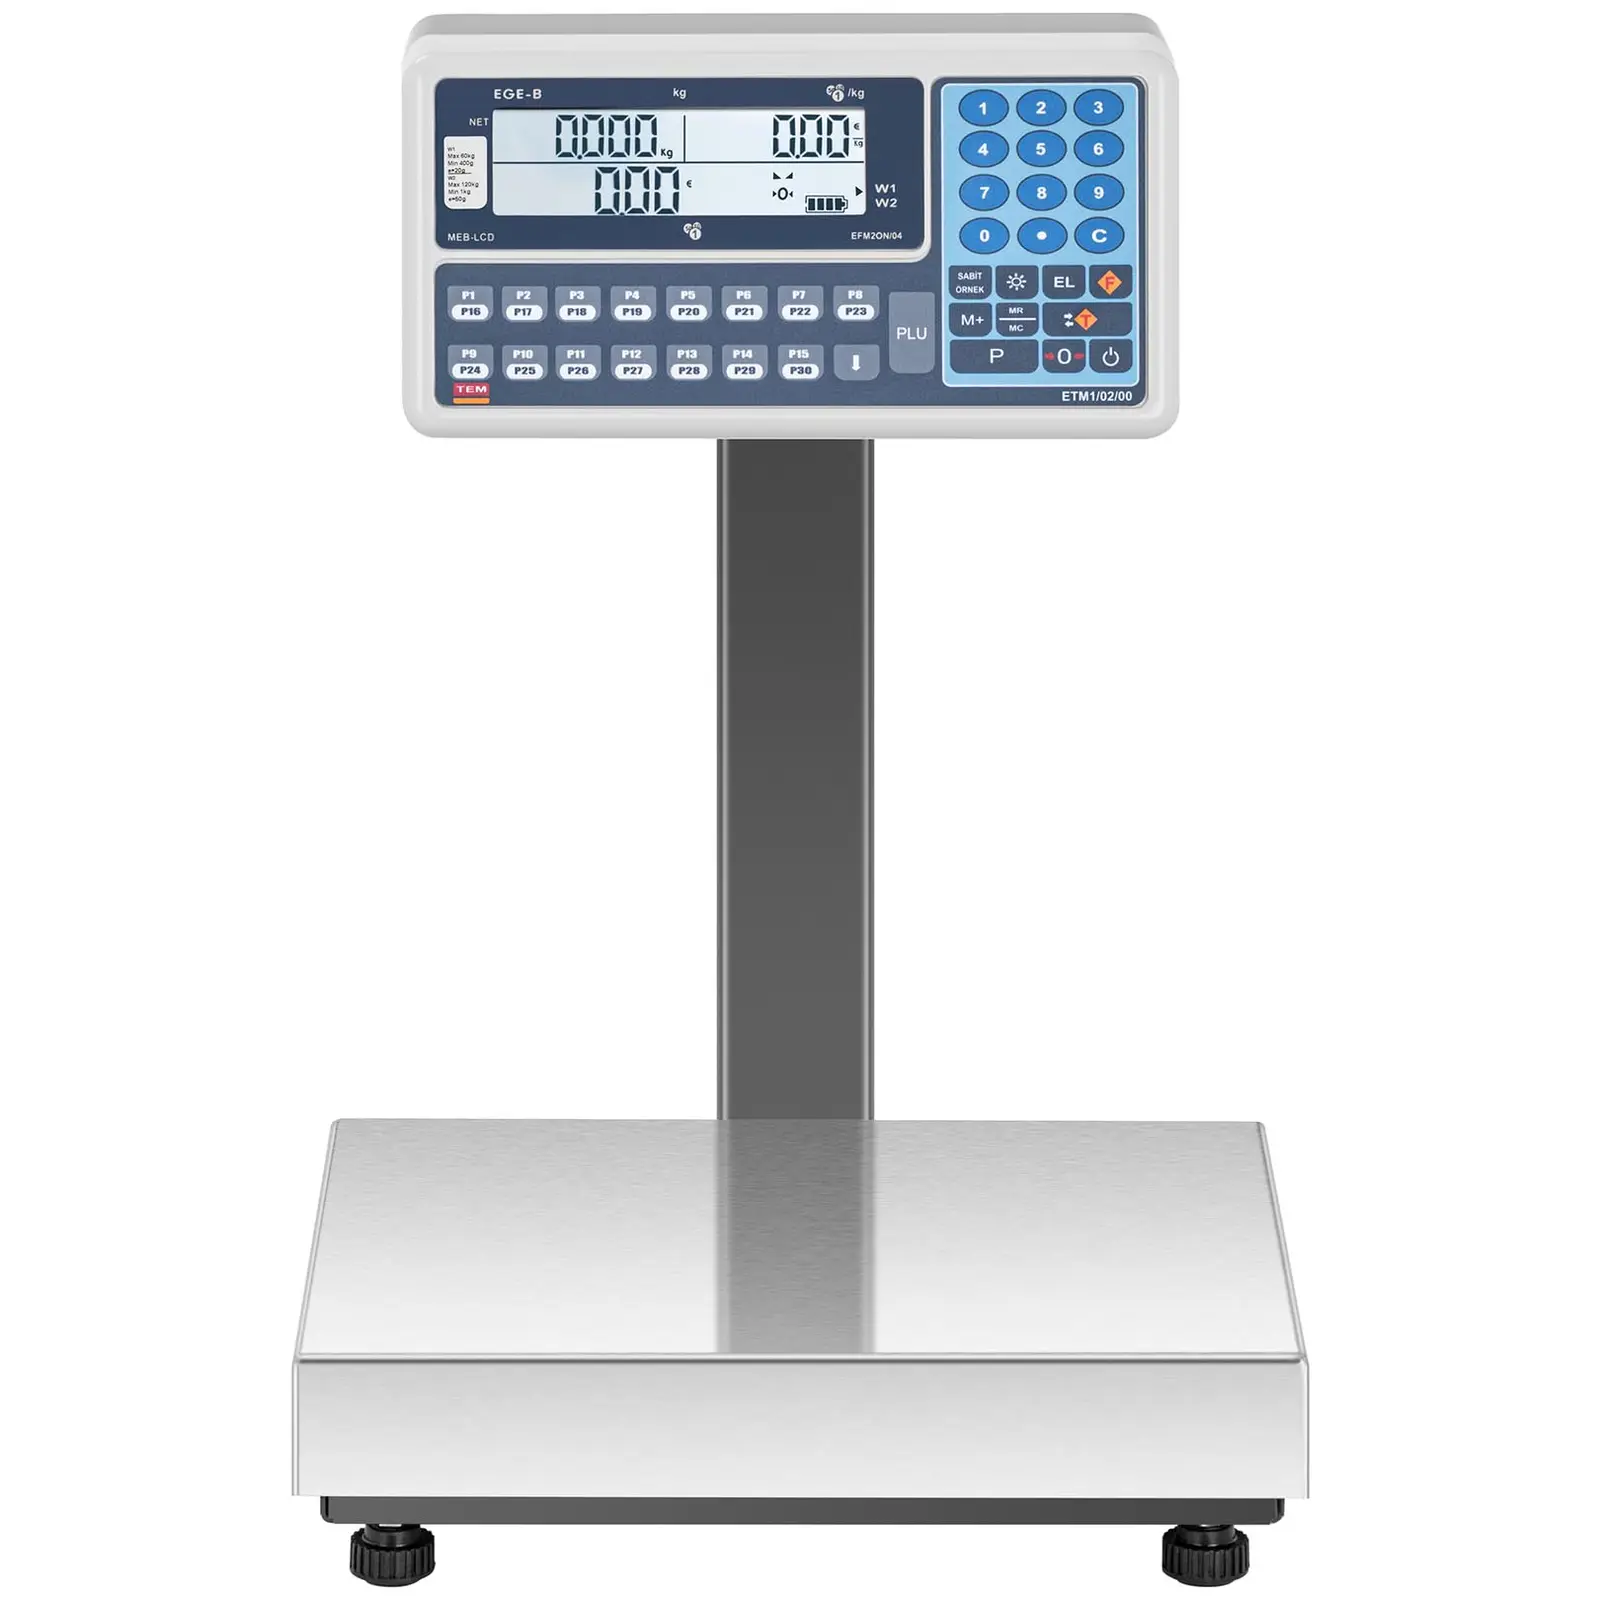 Váha s výpočtem ceny - cejchovaná - 60 kg/20 g - 120 kg/50 g- duální LCD